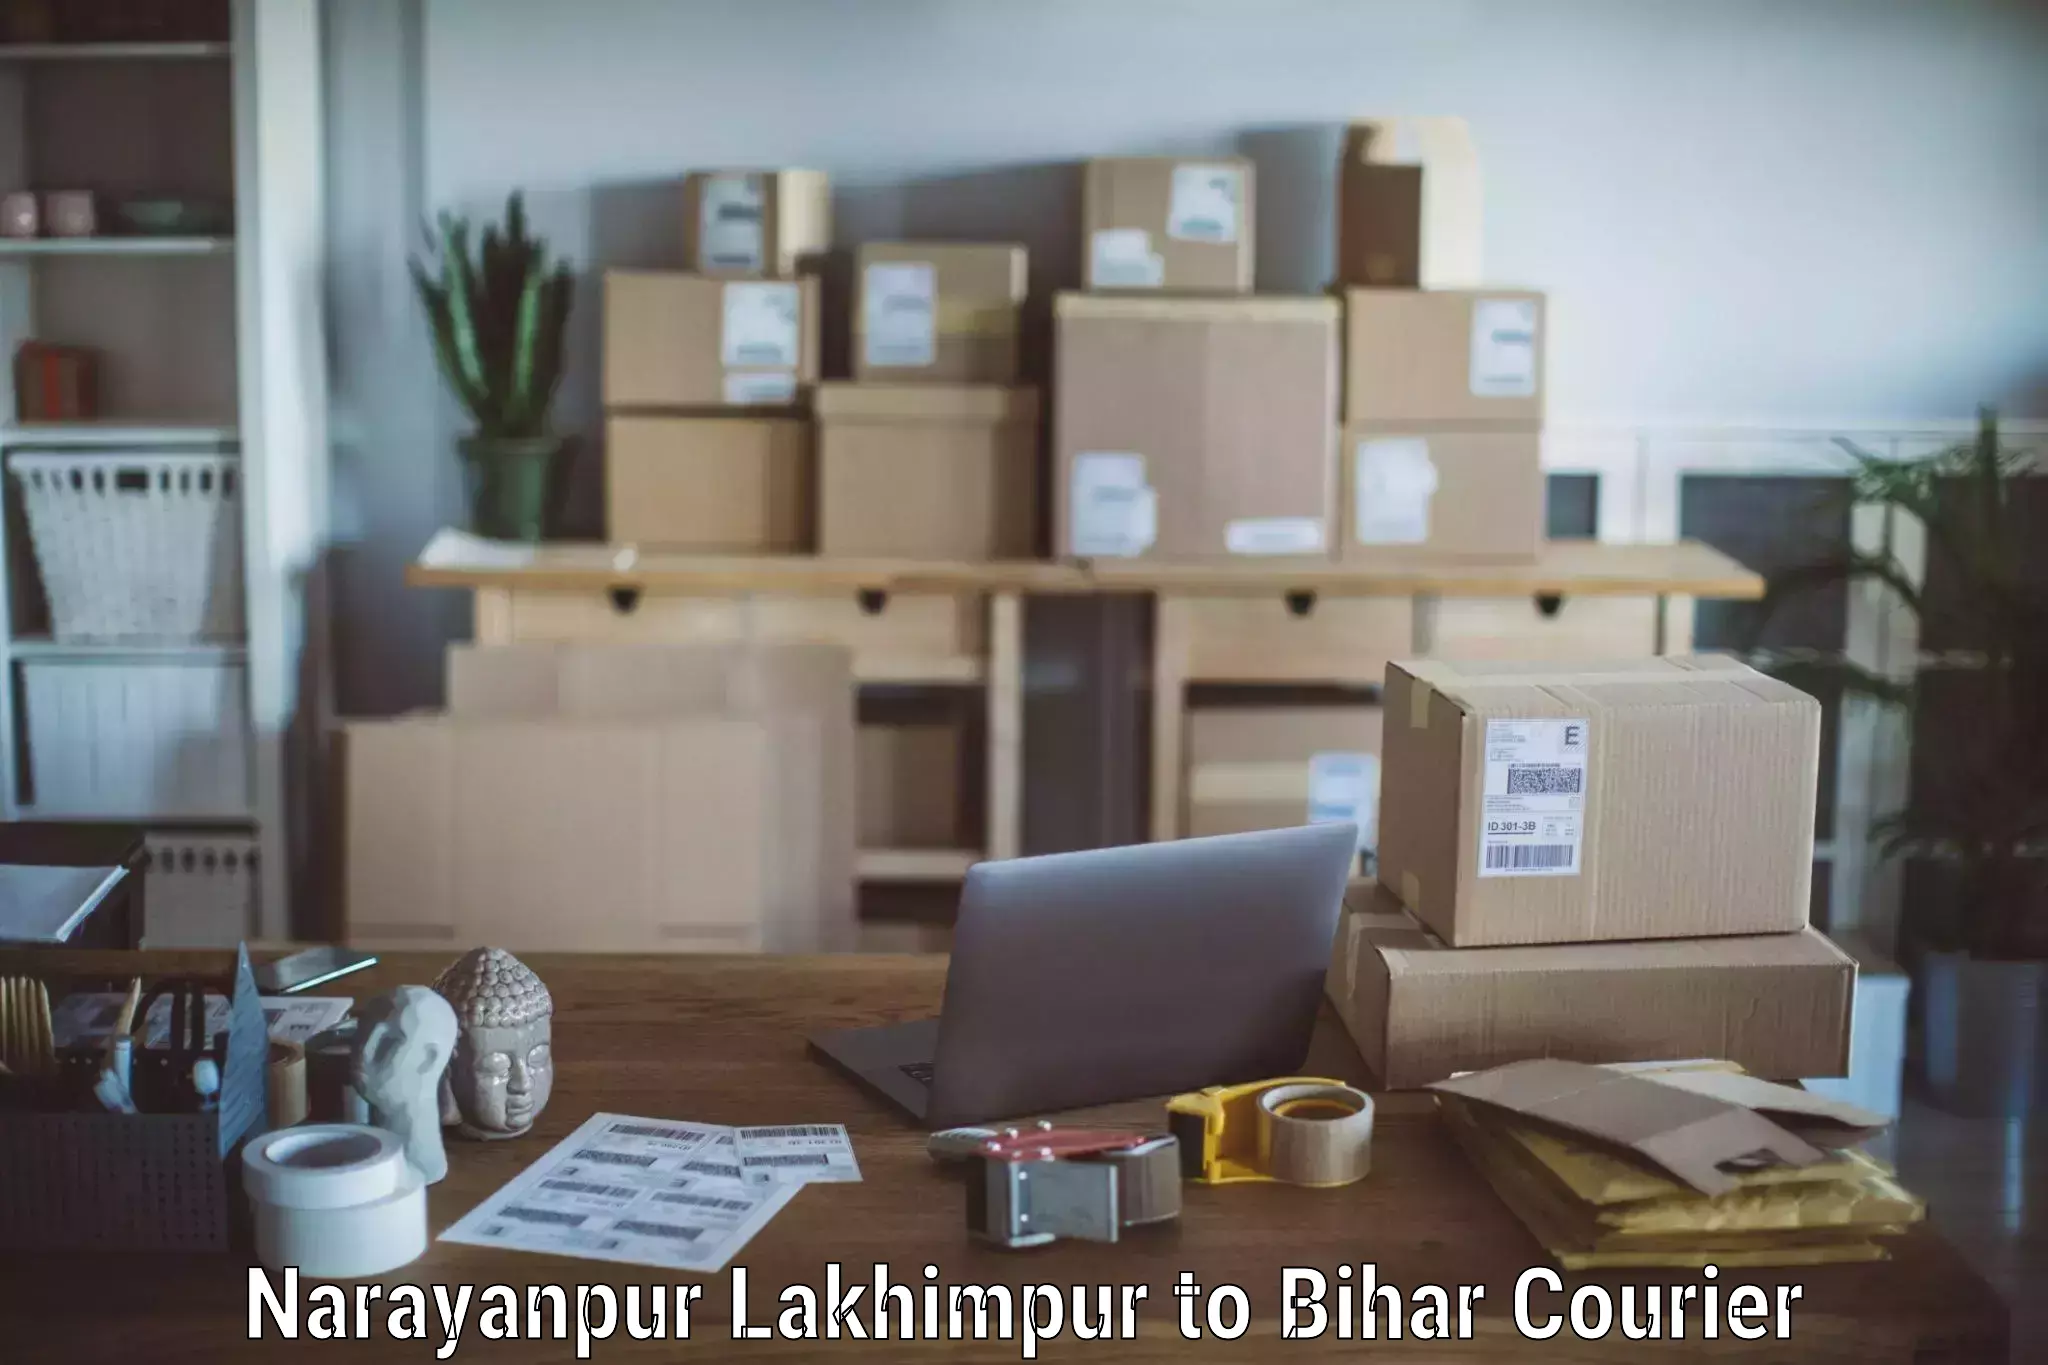 Furniture transport experts Narayanpur Lakhimpur to Baniapur